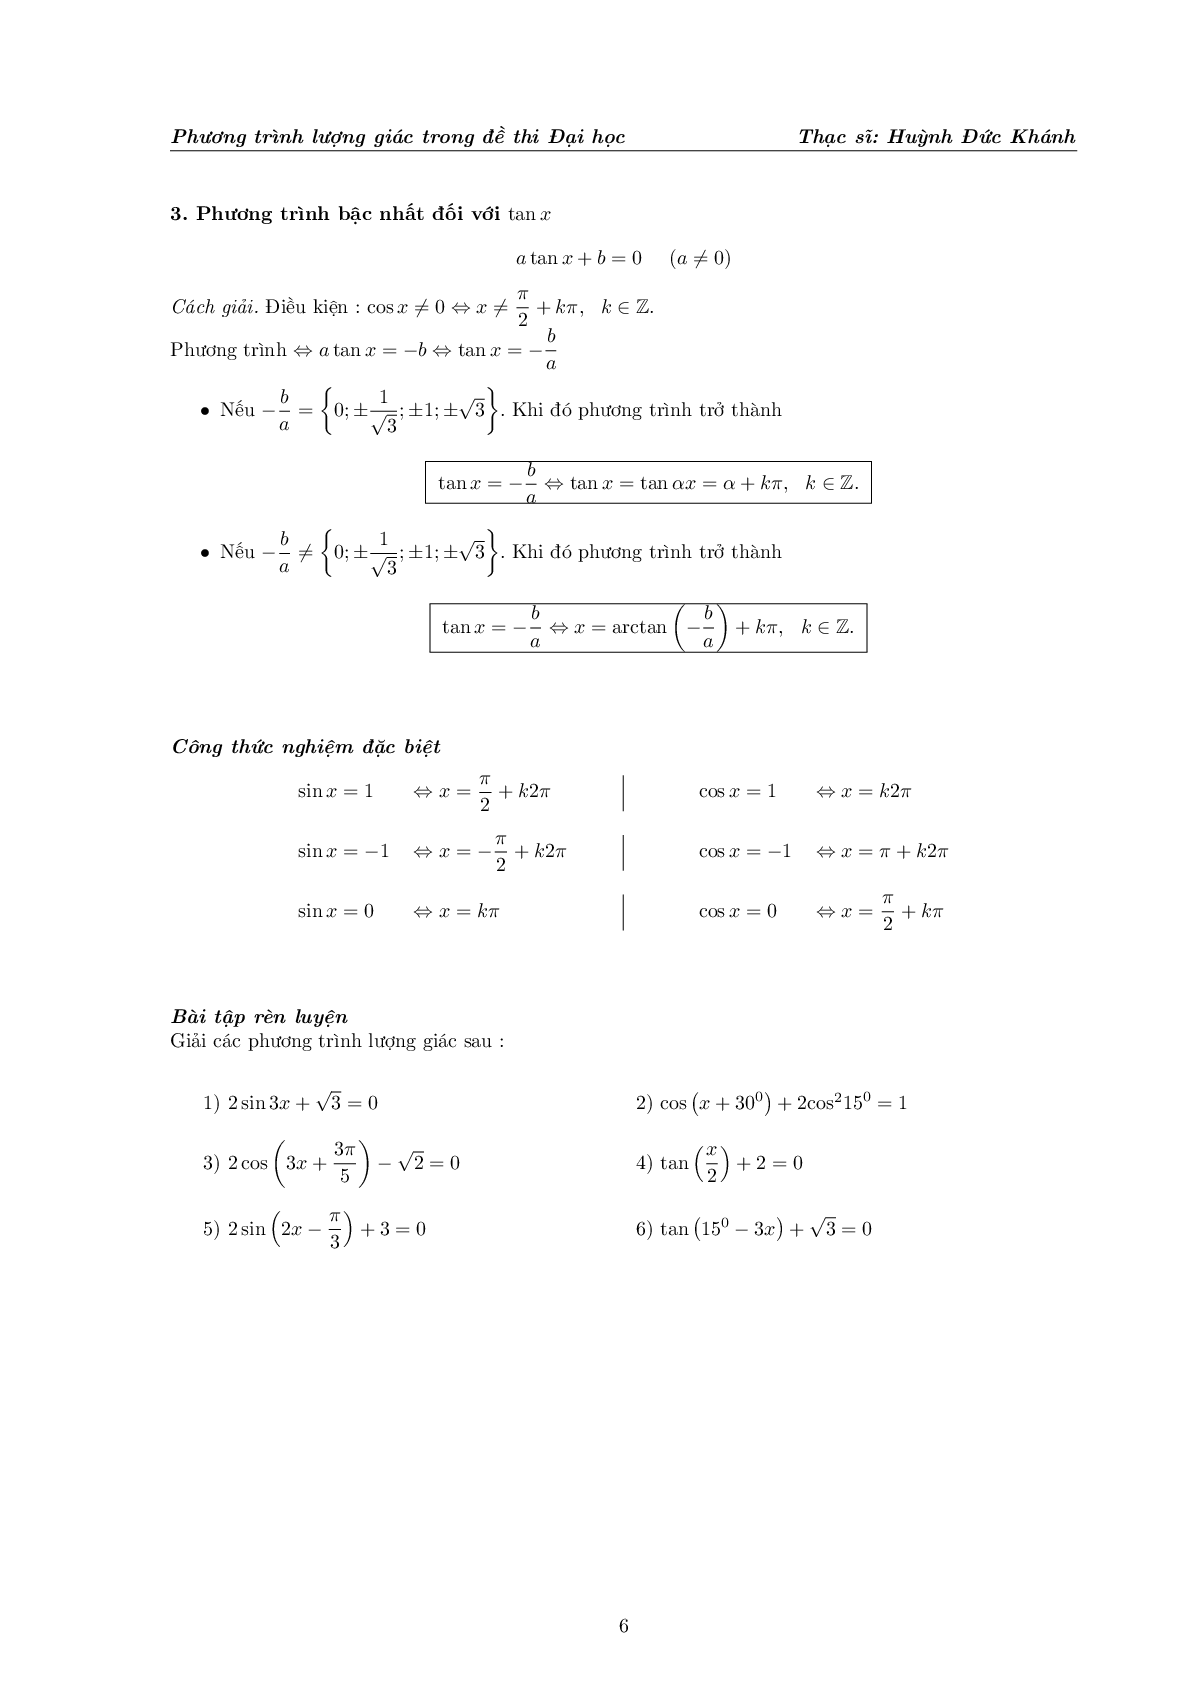 Phương trình lượng giác trong đề thi Đại học (trang 7)